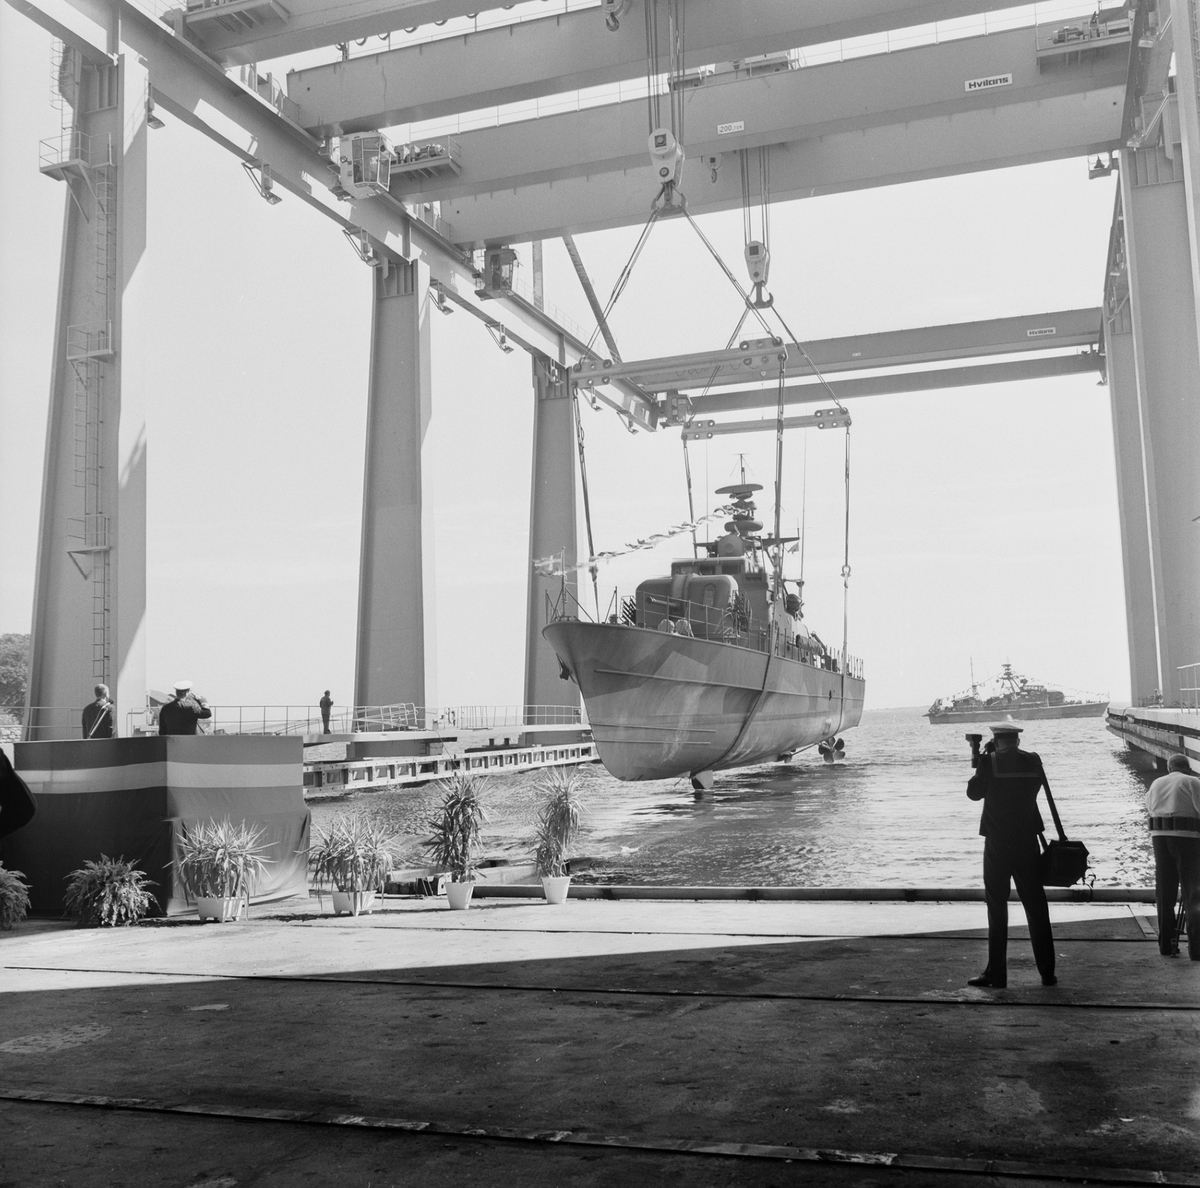 PTRB Tirfing överlämnas till Marinen efter ombyggnad.
Närmast identisk bild: V134115 och V134118, ej skannade.